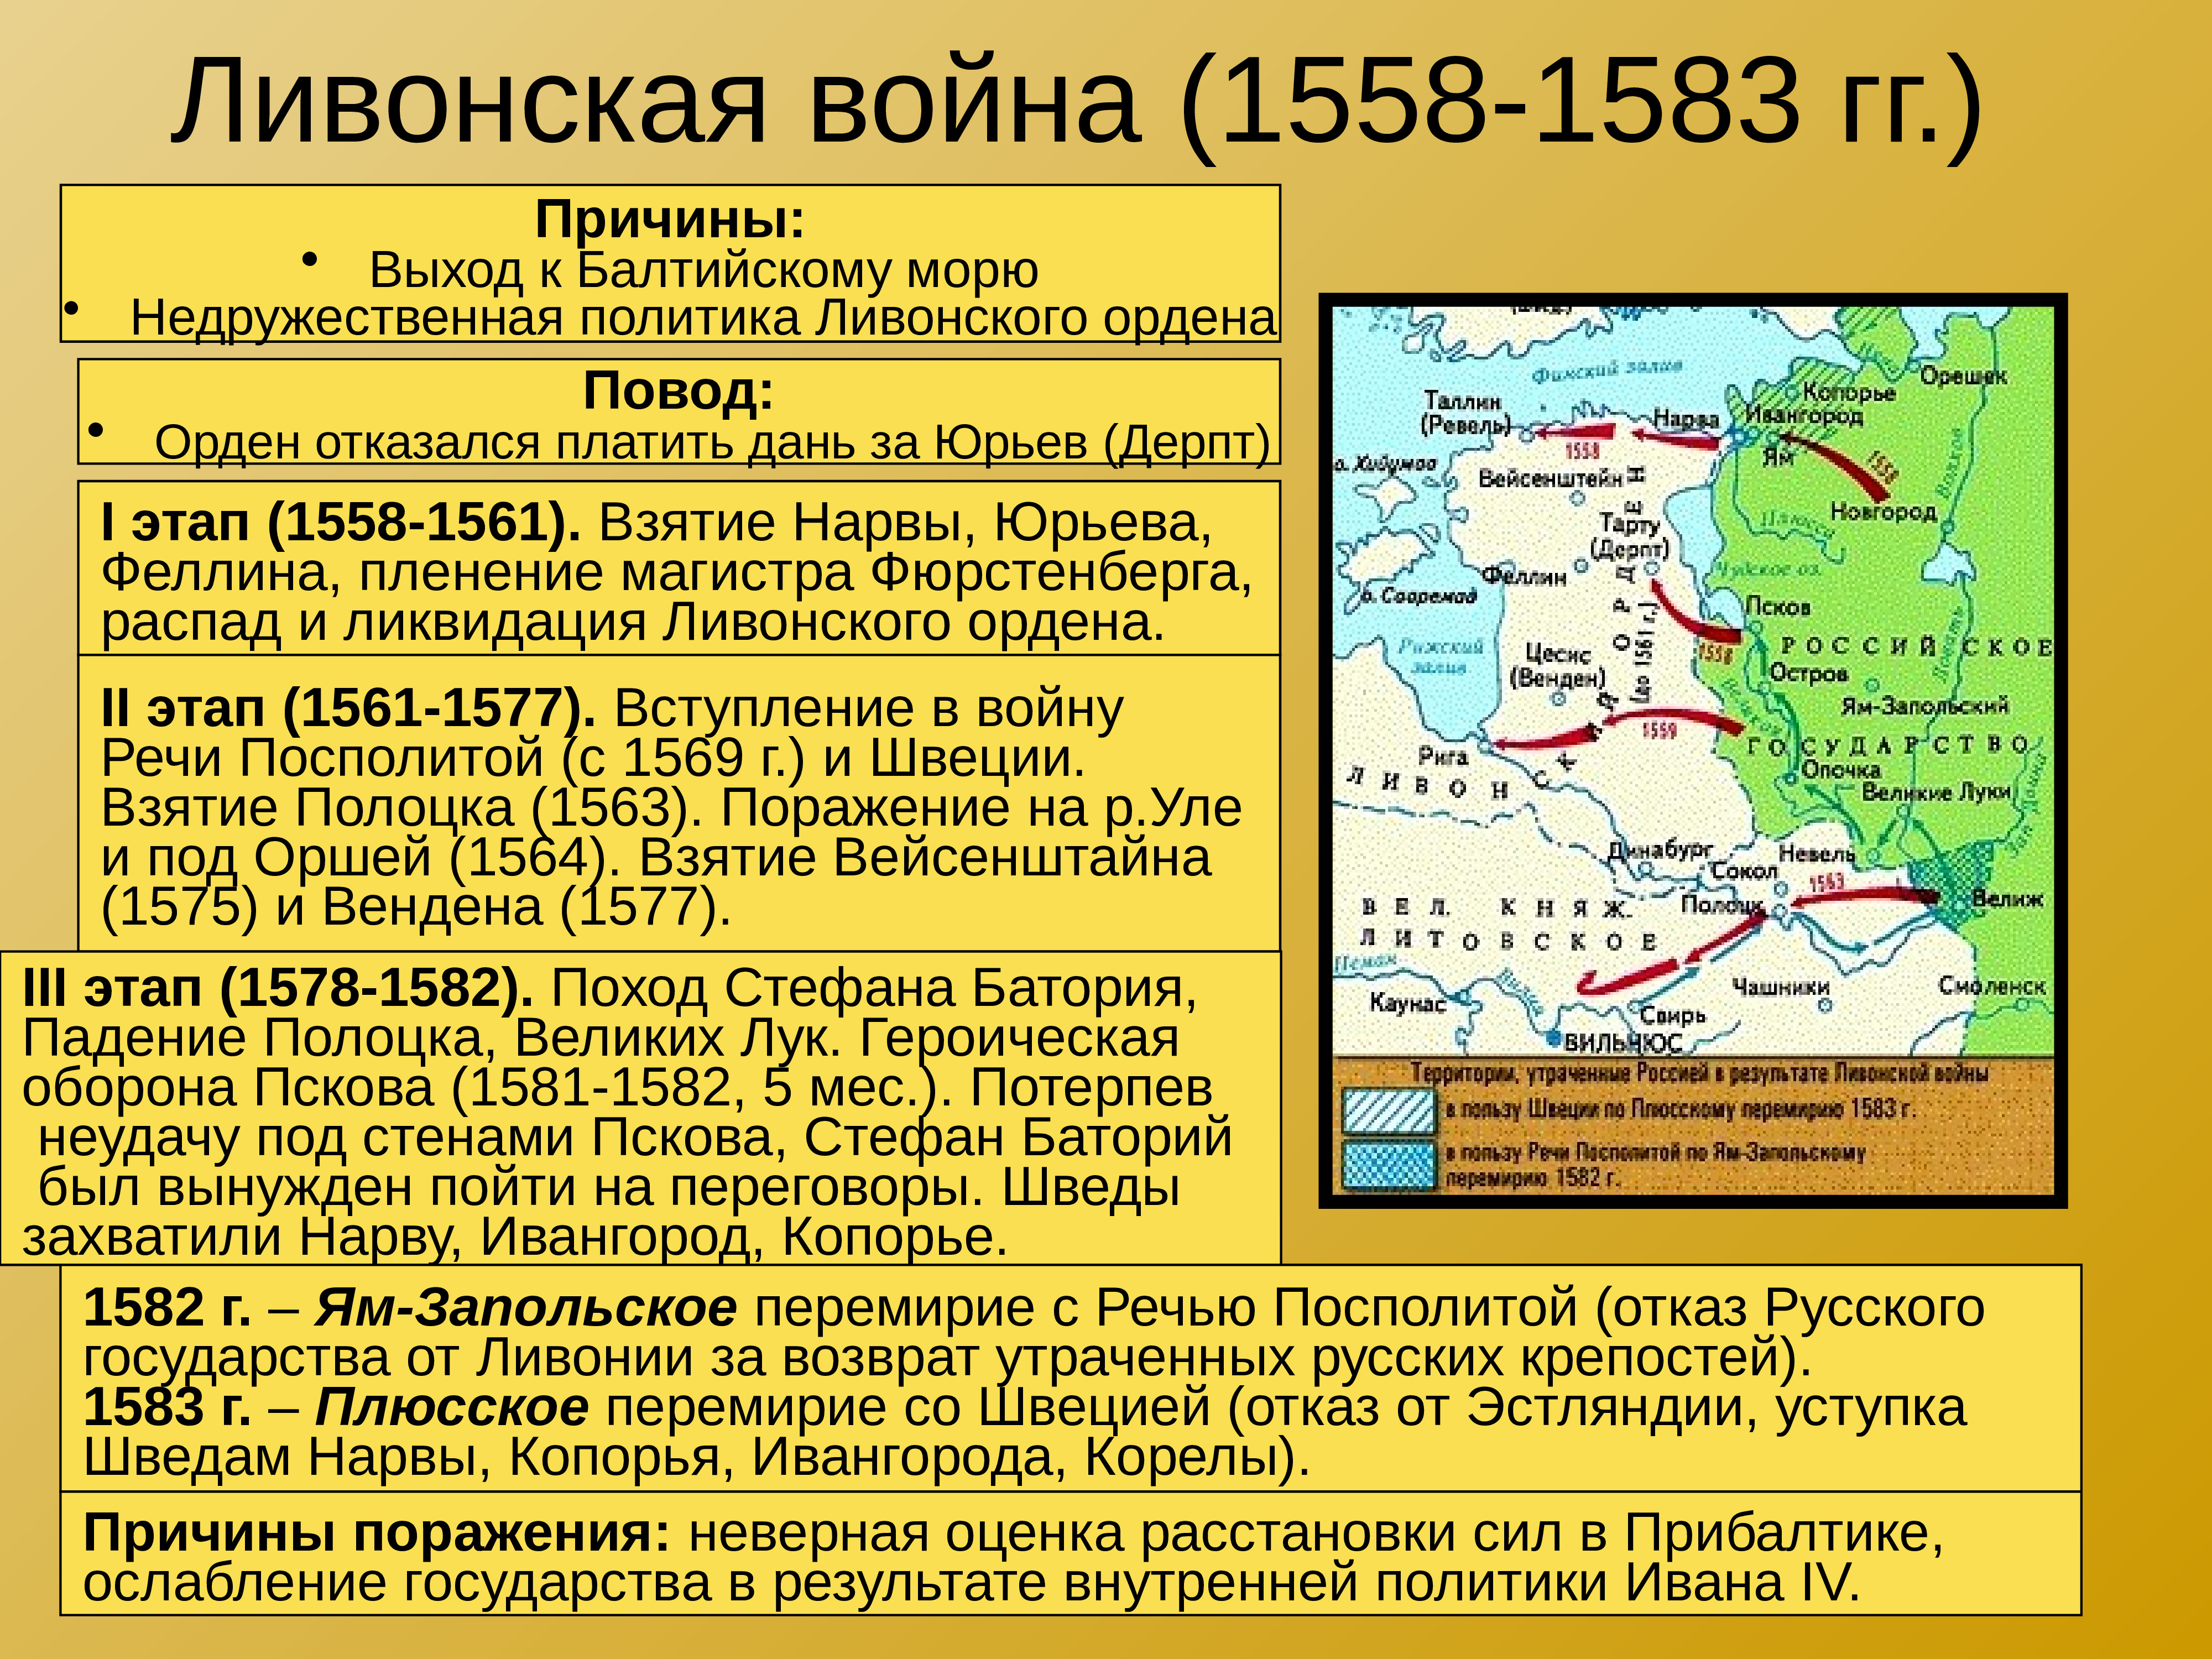 1618 мирный договор с речью посполитой. Участники русско Ливонской войны 1558-1583.